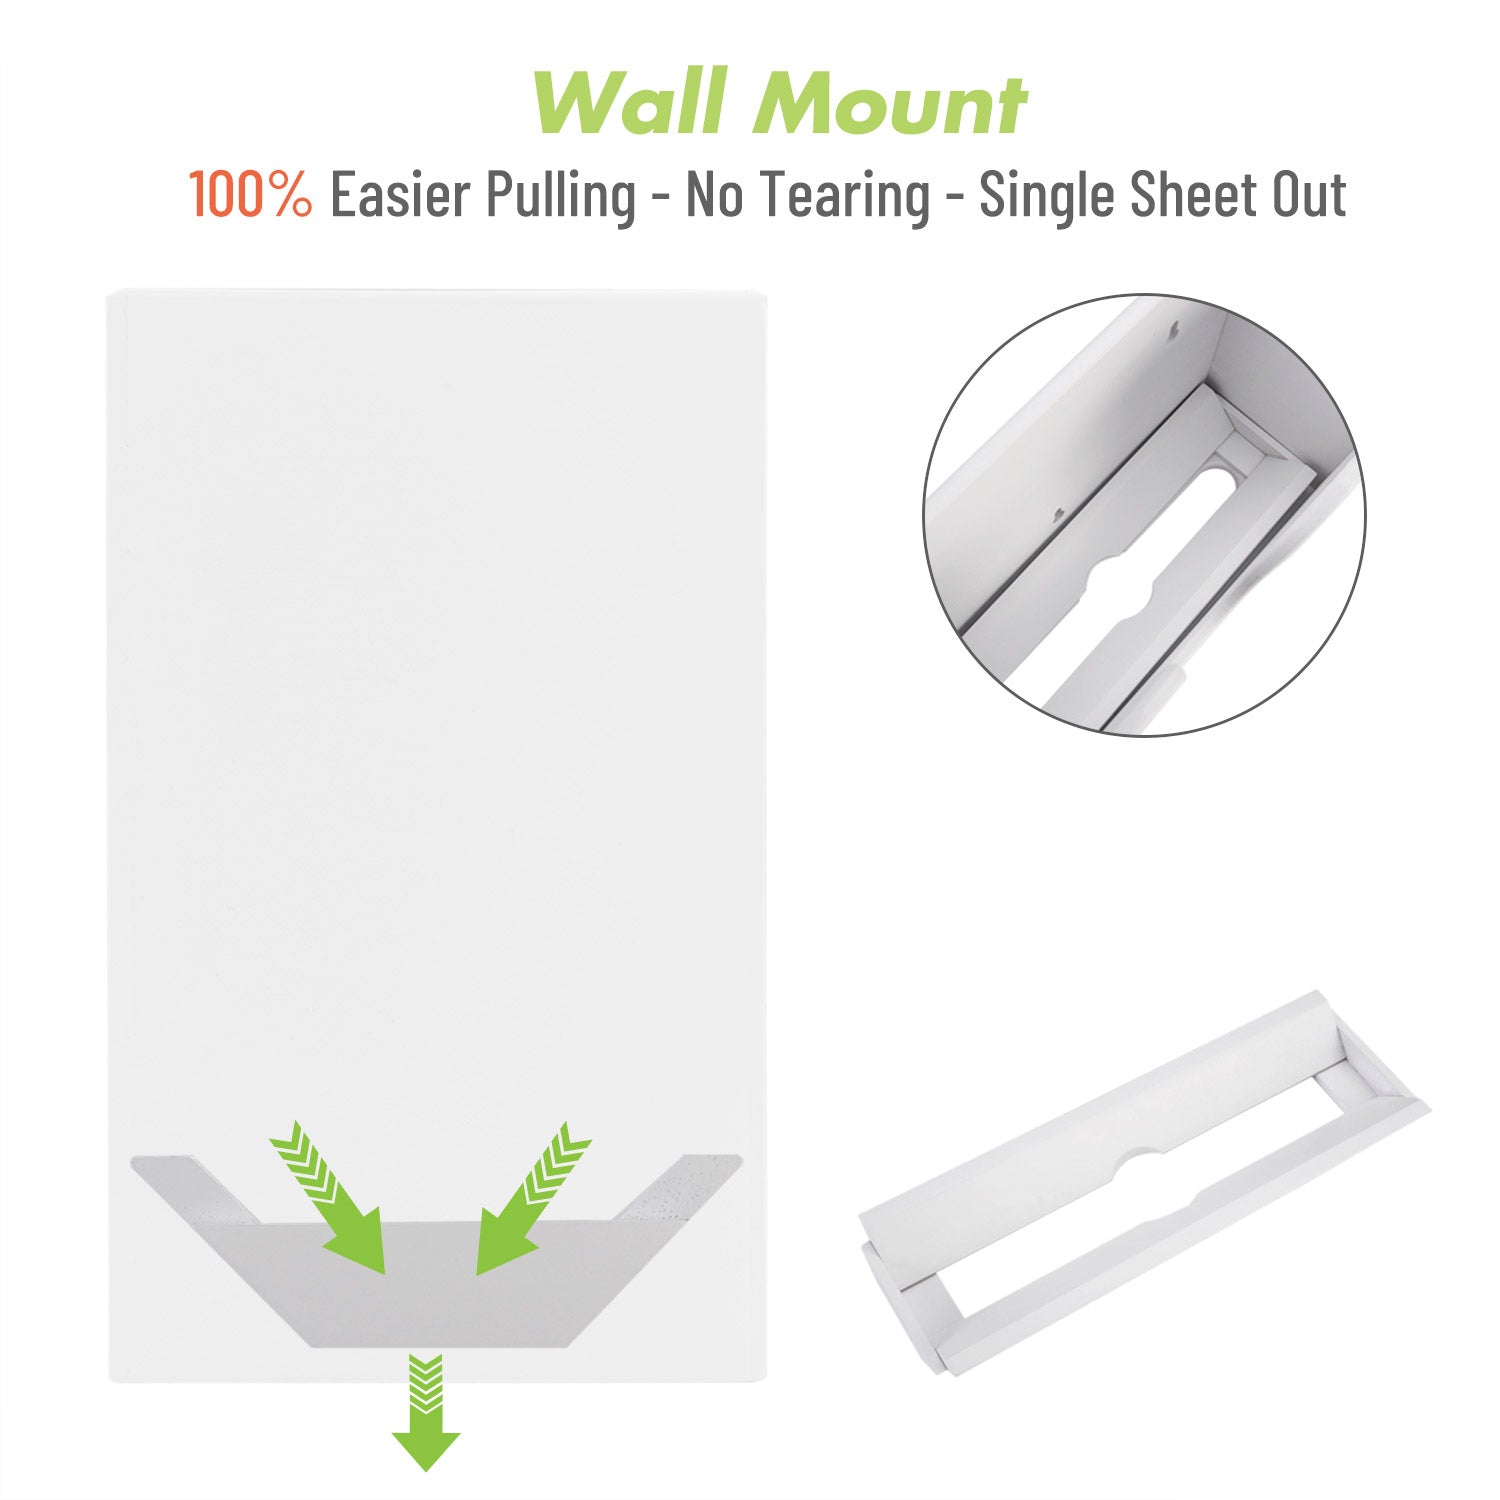 Paper Towel Dispenser - Aluminum